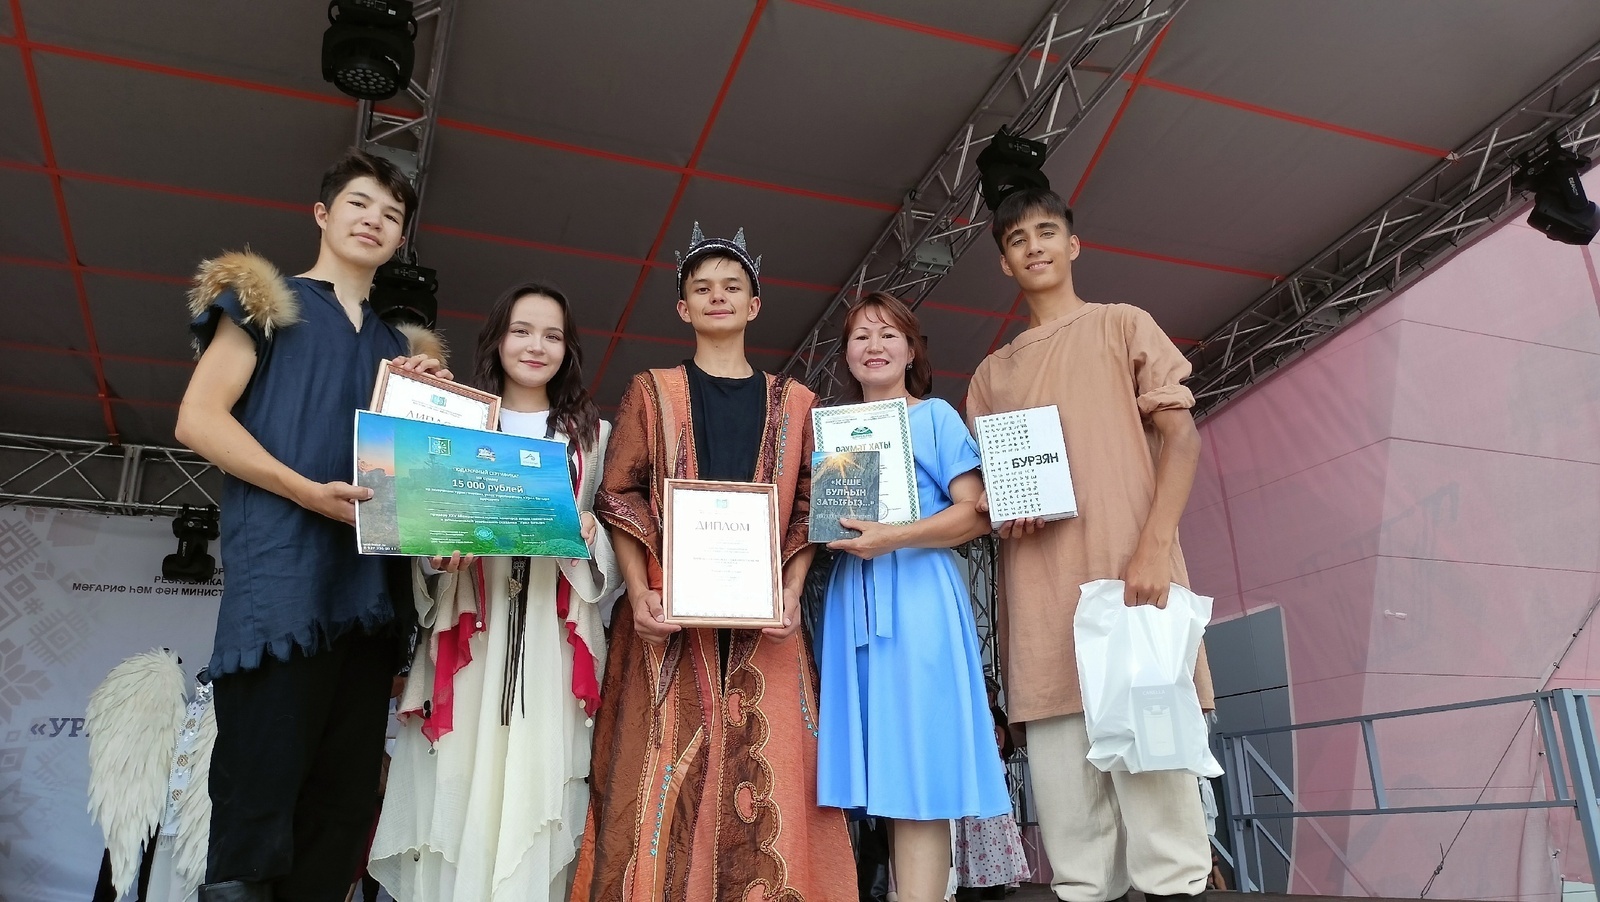 В Башкирии назвали победителей межрегионального конкурса юных сказителей конкурса "Урал батыр"